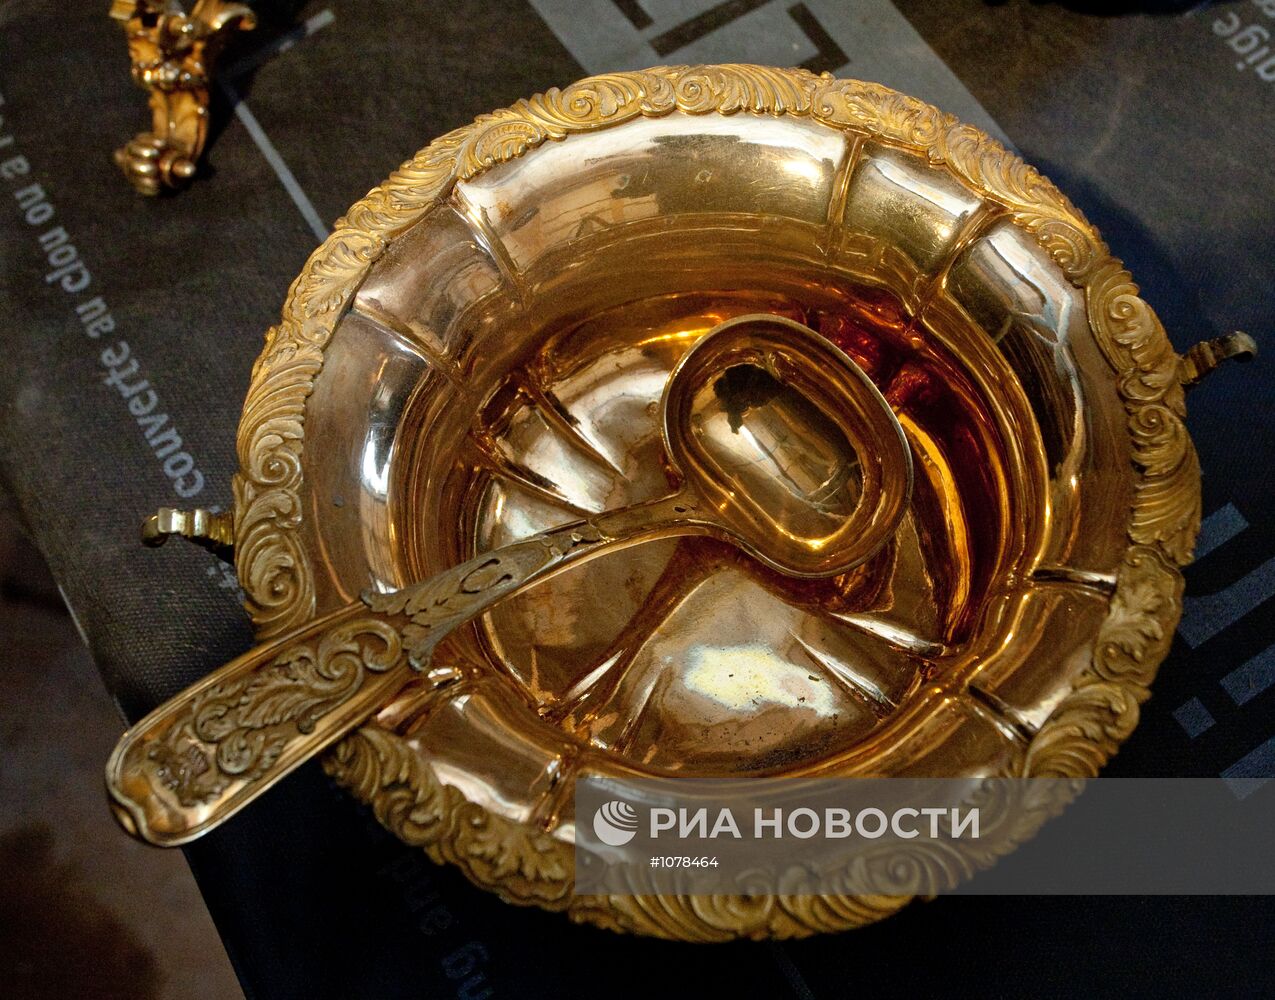 Клад, найденный при реставрации особняка в Санкт-Петербурге